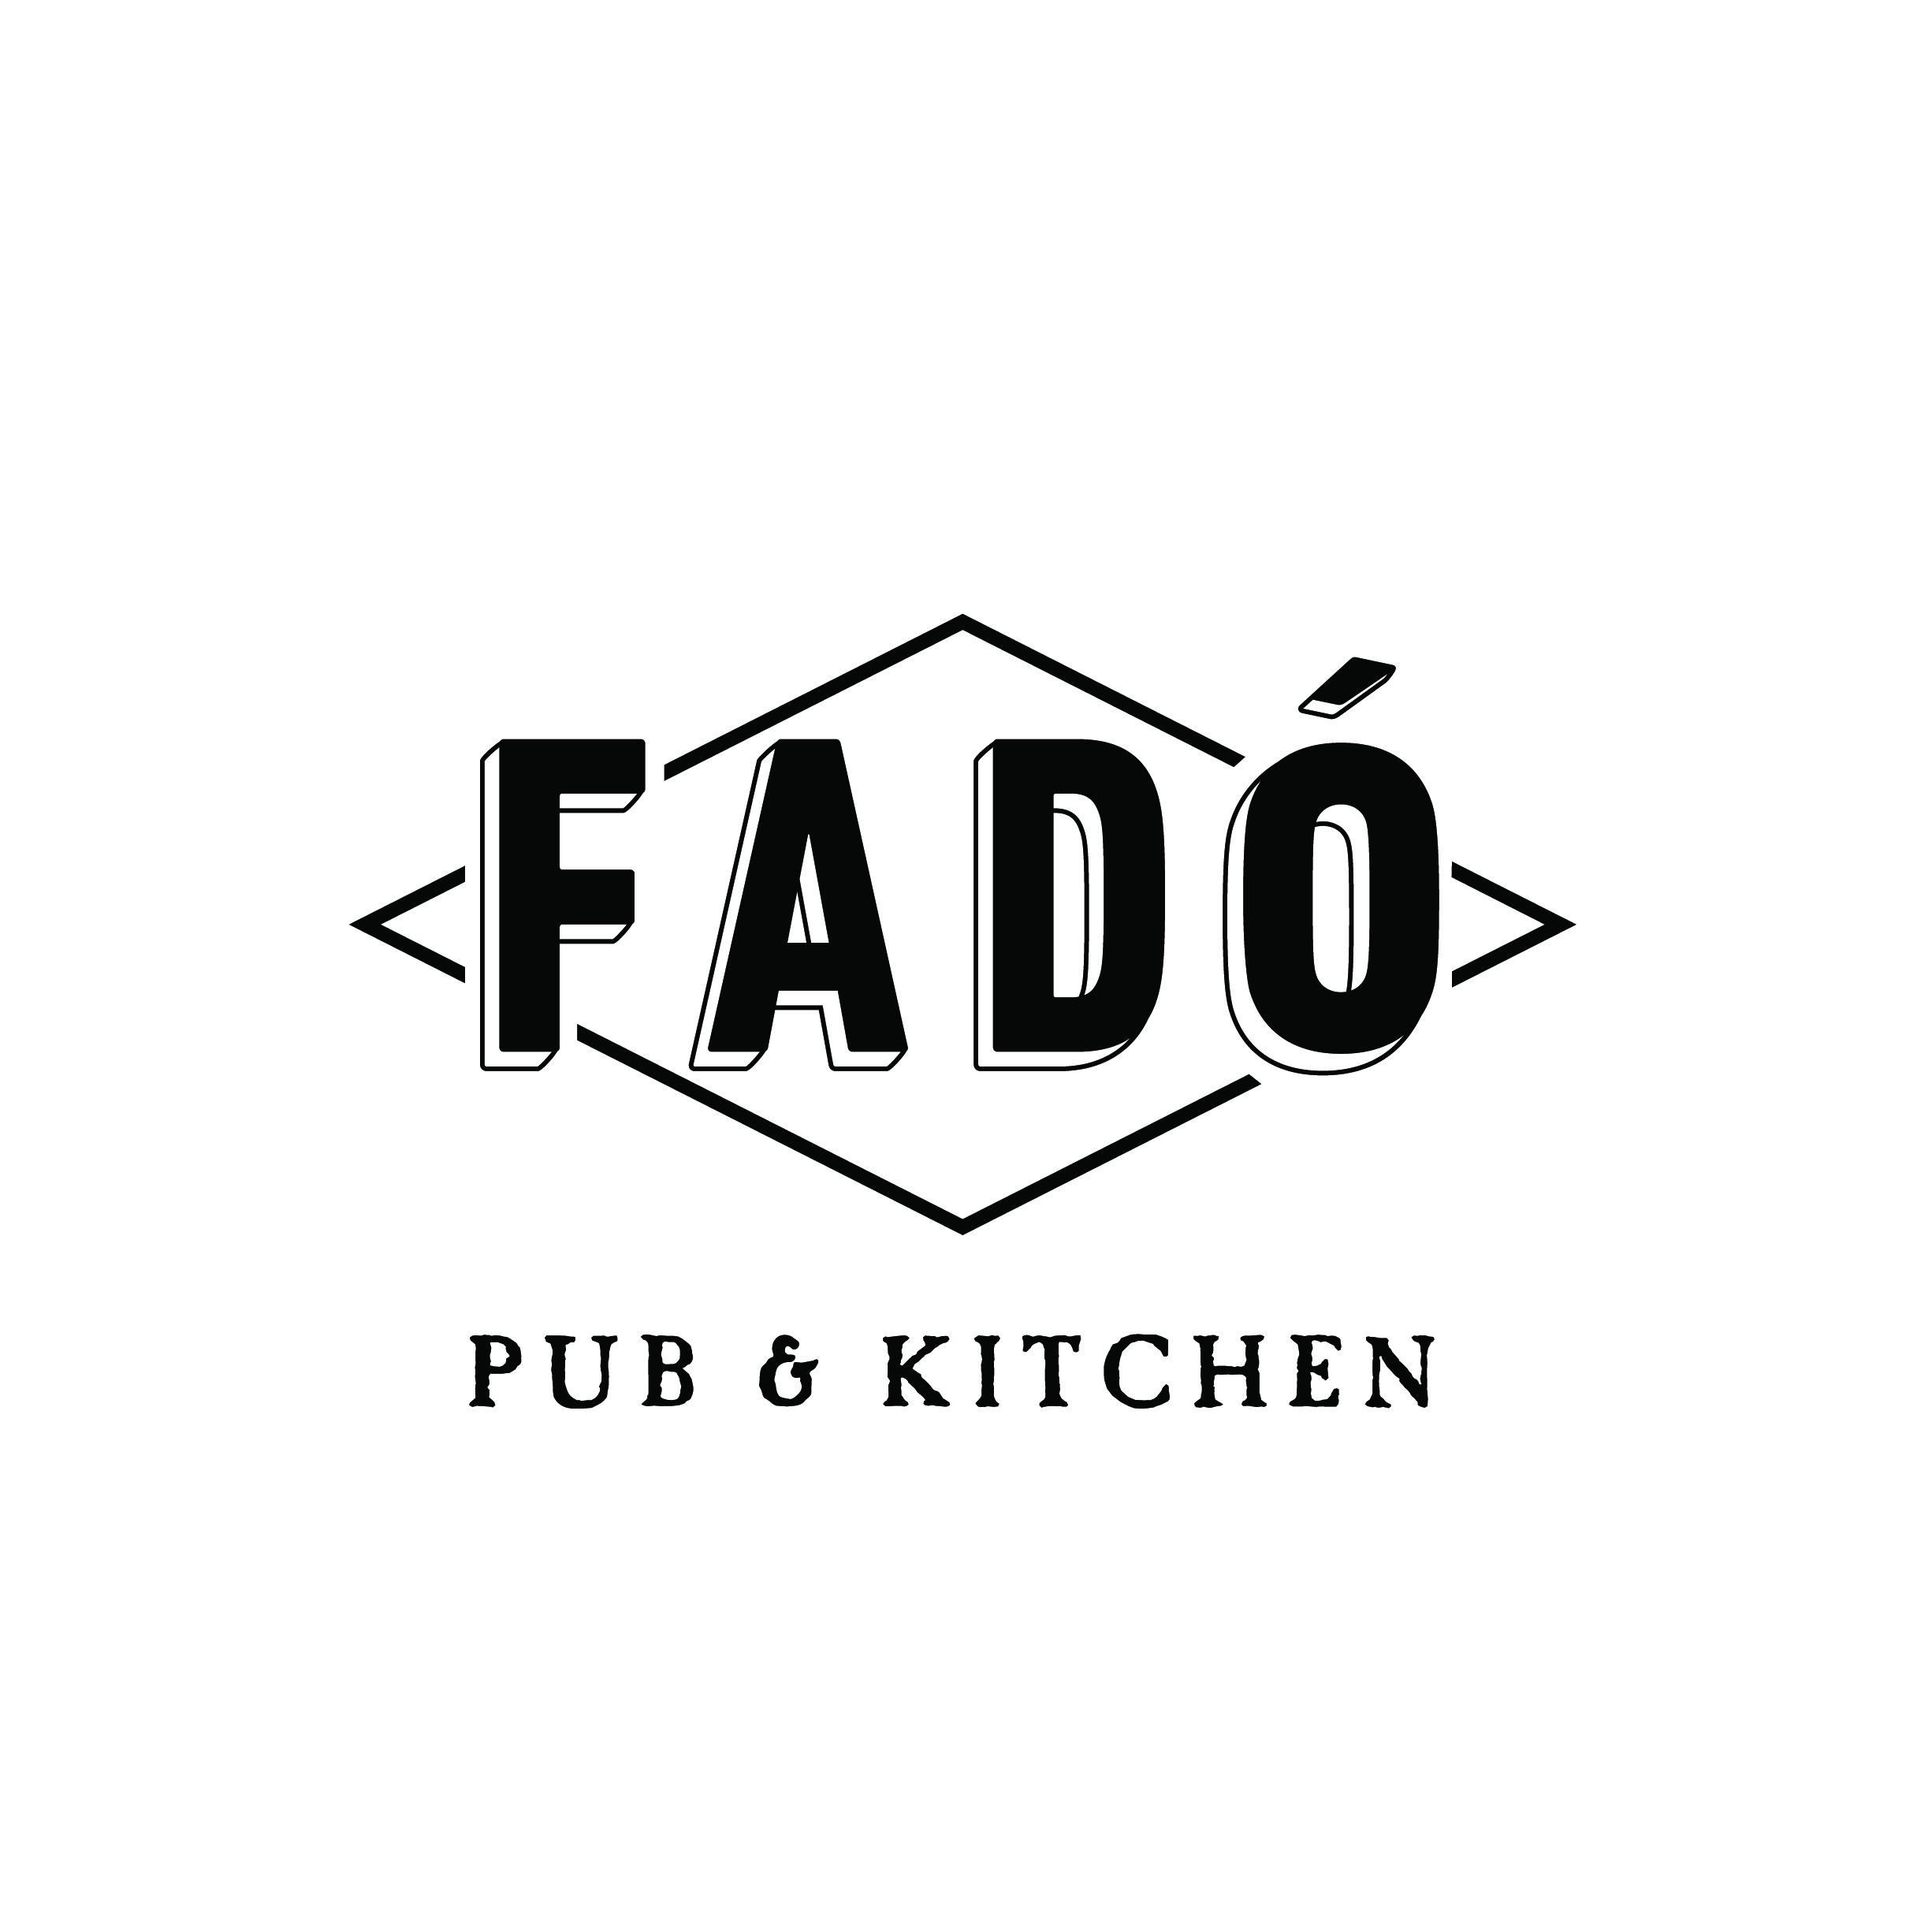 Fado Pub & Kitchen Dublin (614)408-1500